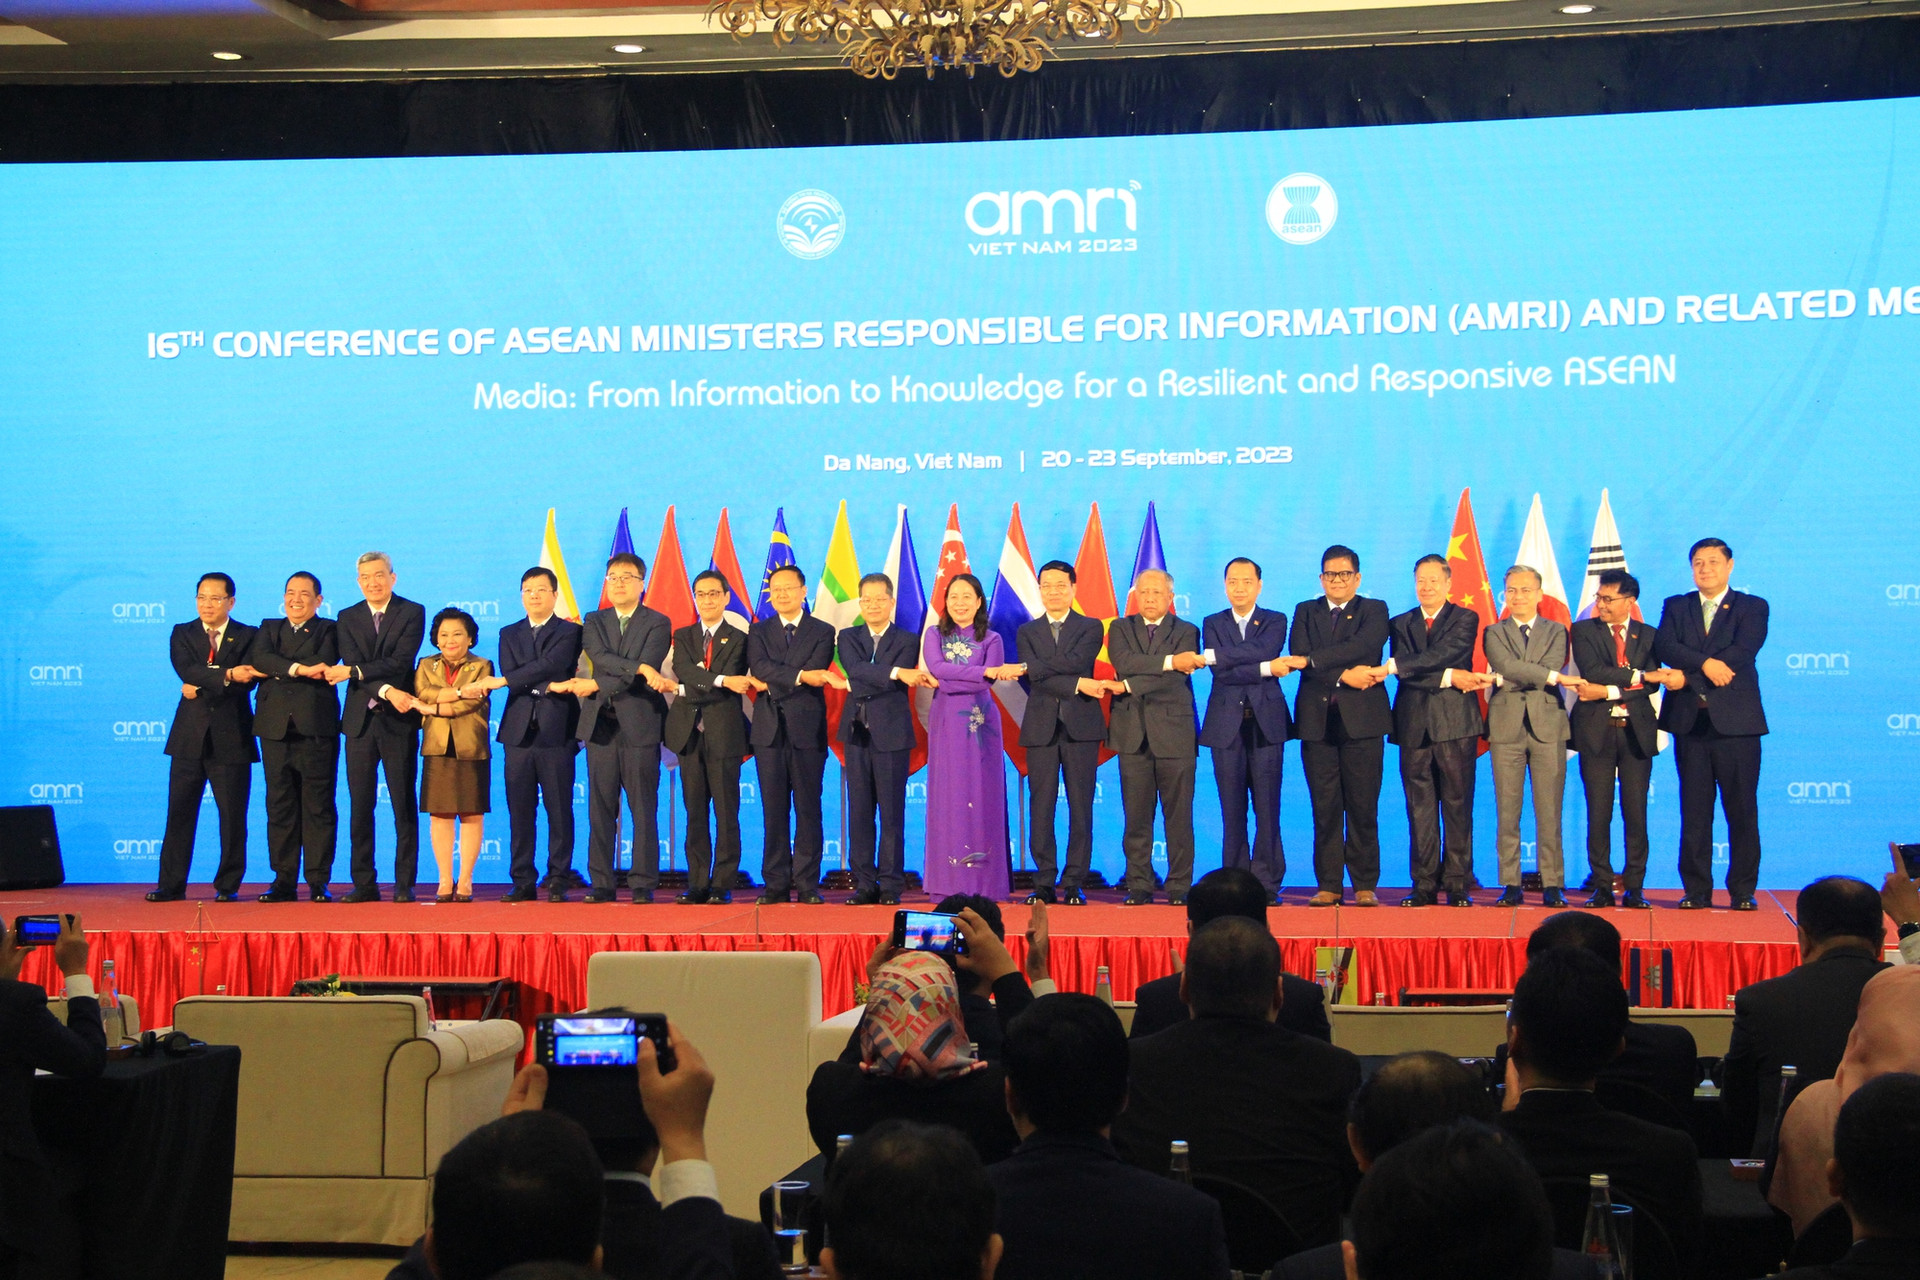 Khai mạc Hội nghị Bộ trưởng Thông tin ASEAN lần thứ 16 - Ảnh 1.